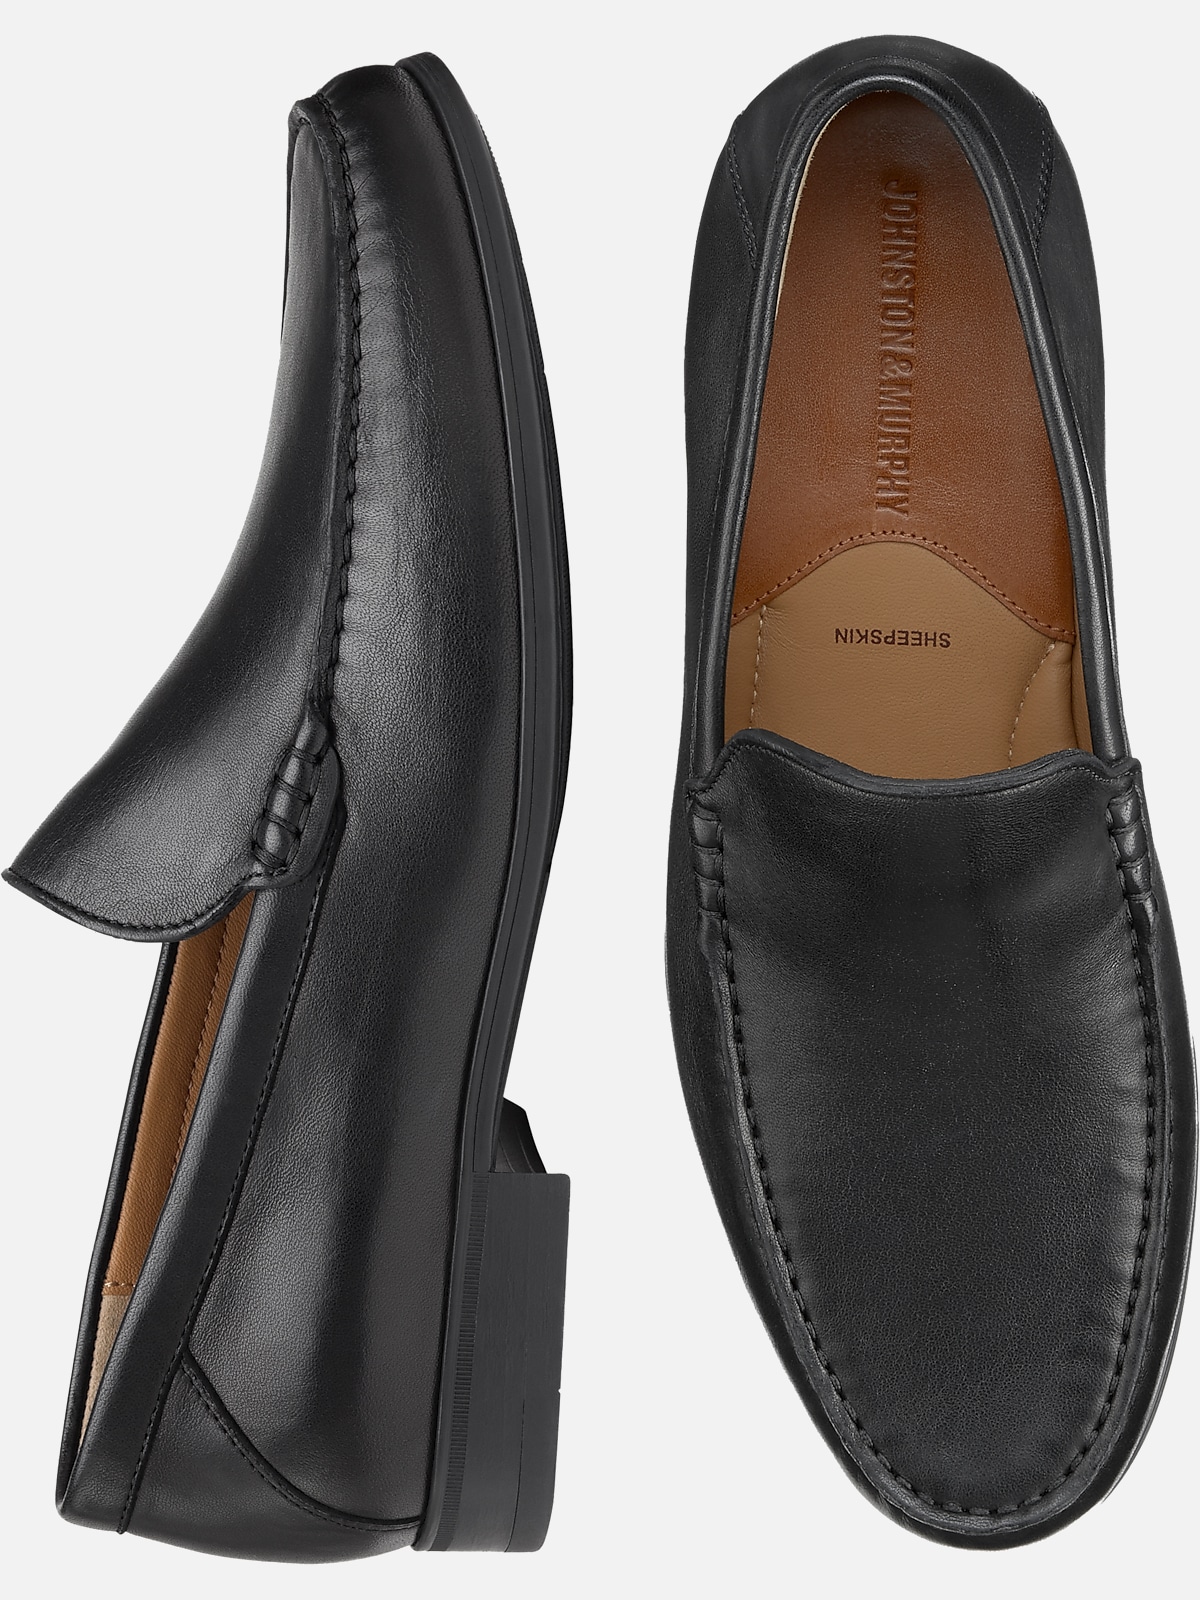 Johnston & Murphy Hawkins Venetian Slip-On Loafers | Dress Shoes| Men's ...